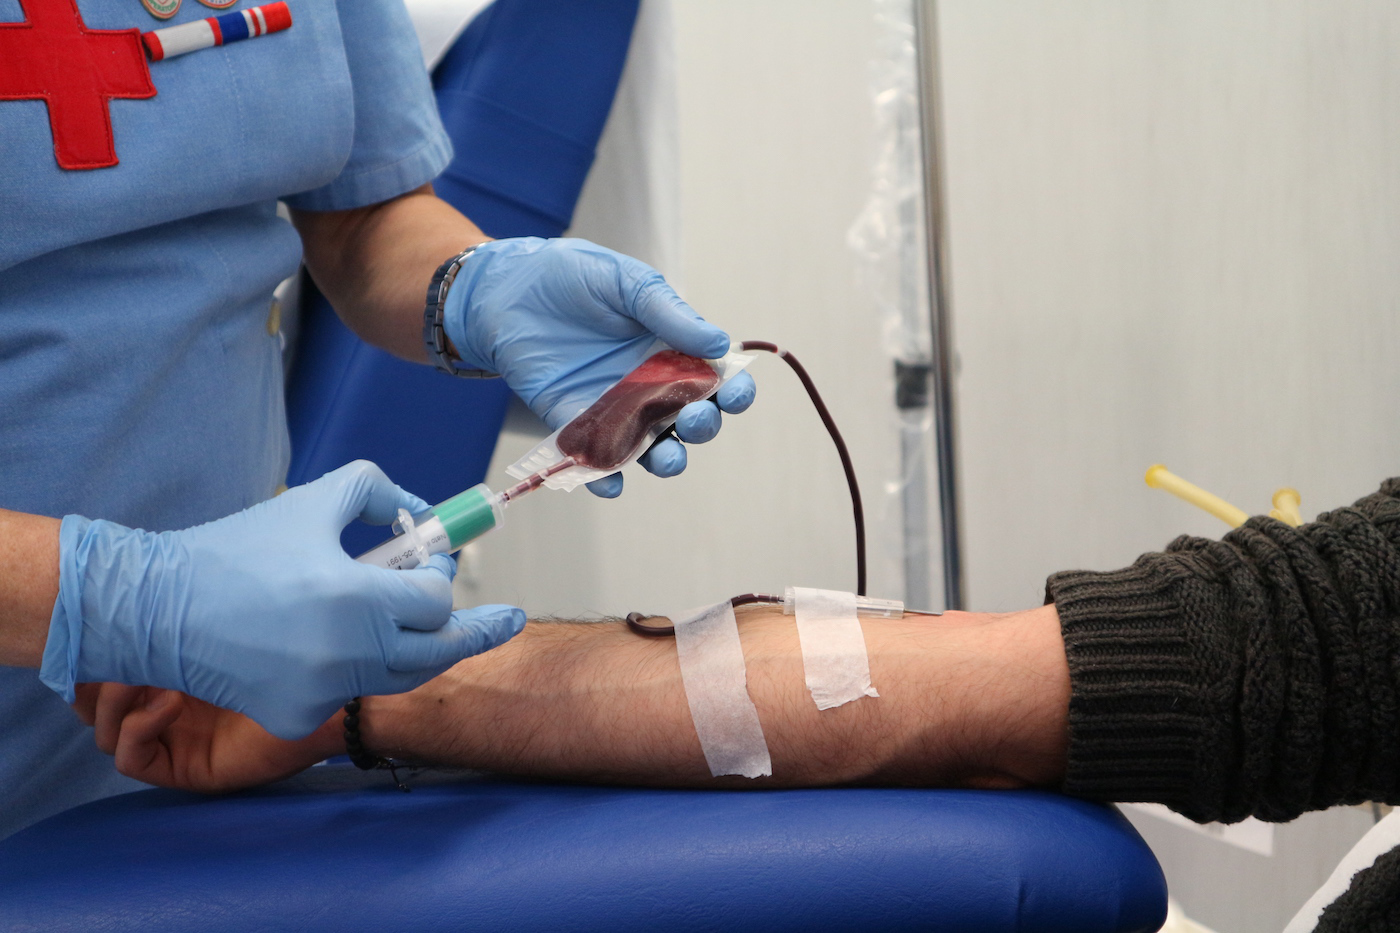 La denuncia della Croce Rossa: "Dai no-vax bufale pericolose su vaccini e donazioni di sangue"